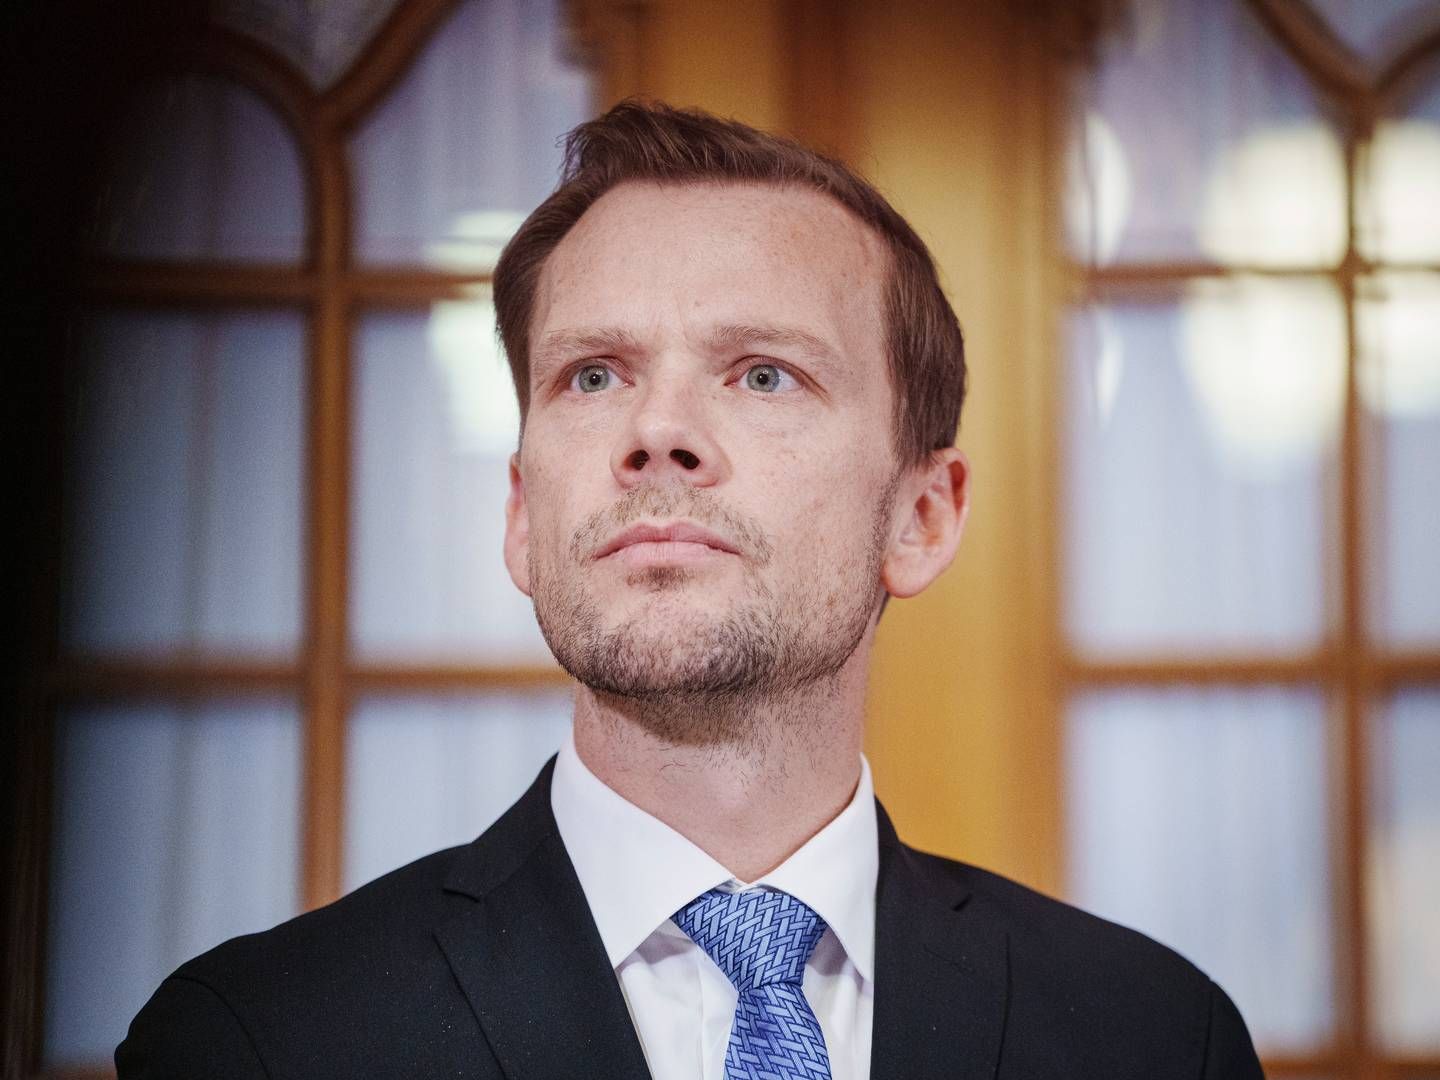 Justitsminister Peter Hummelgaard (S) afviser over for Politiken, at han eller ministeriet ”skulle have bedt Rigsadvokaten sikre, at advokaterne ikke blev varslet.” | Foto: Liselotte Sabroe